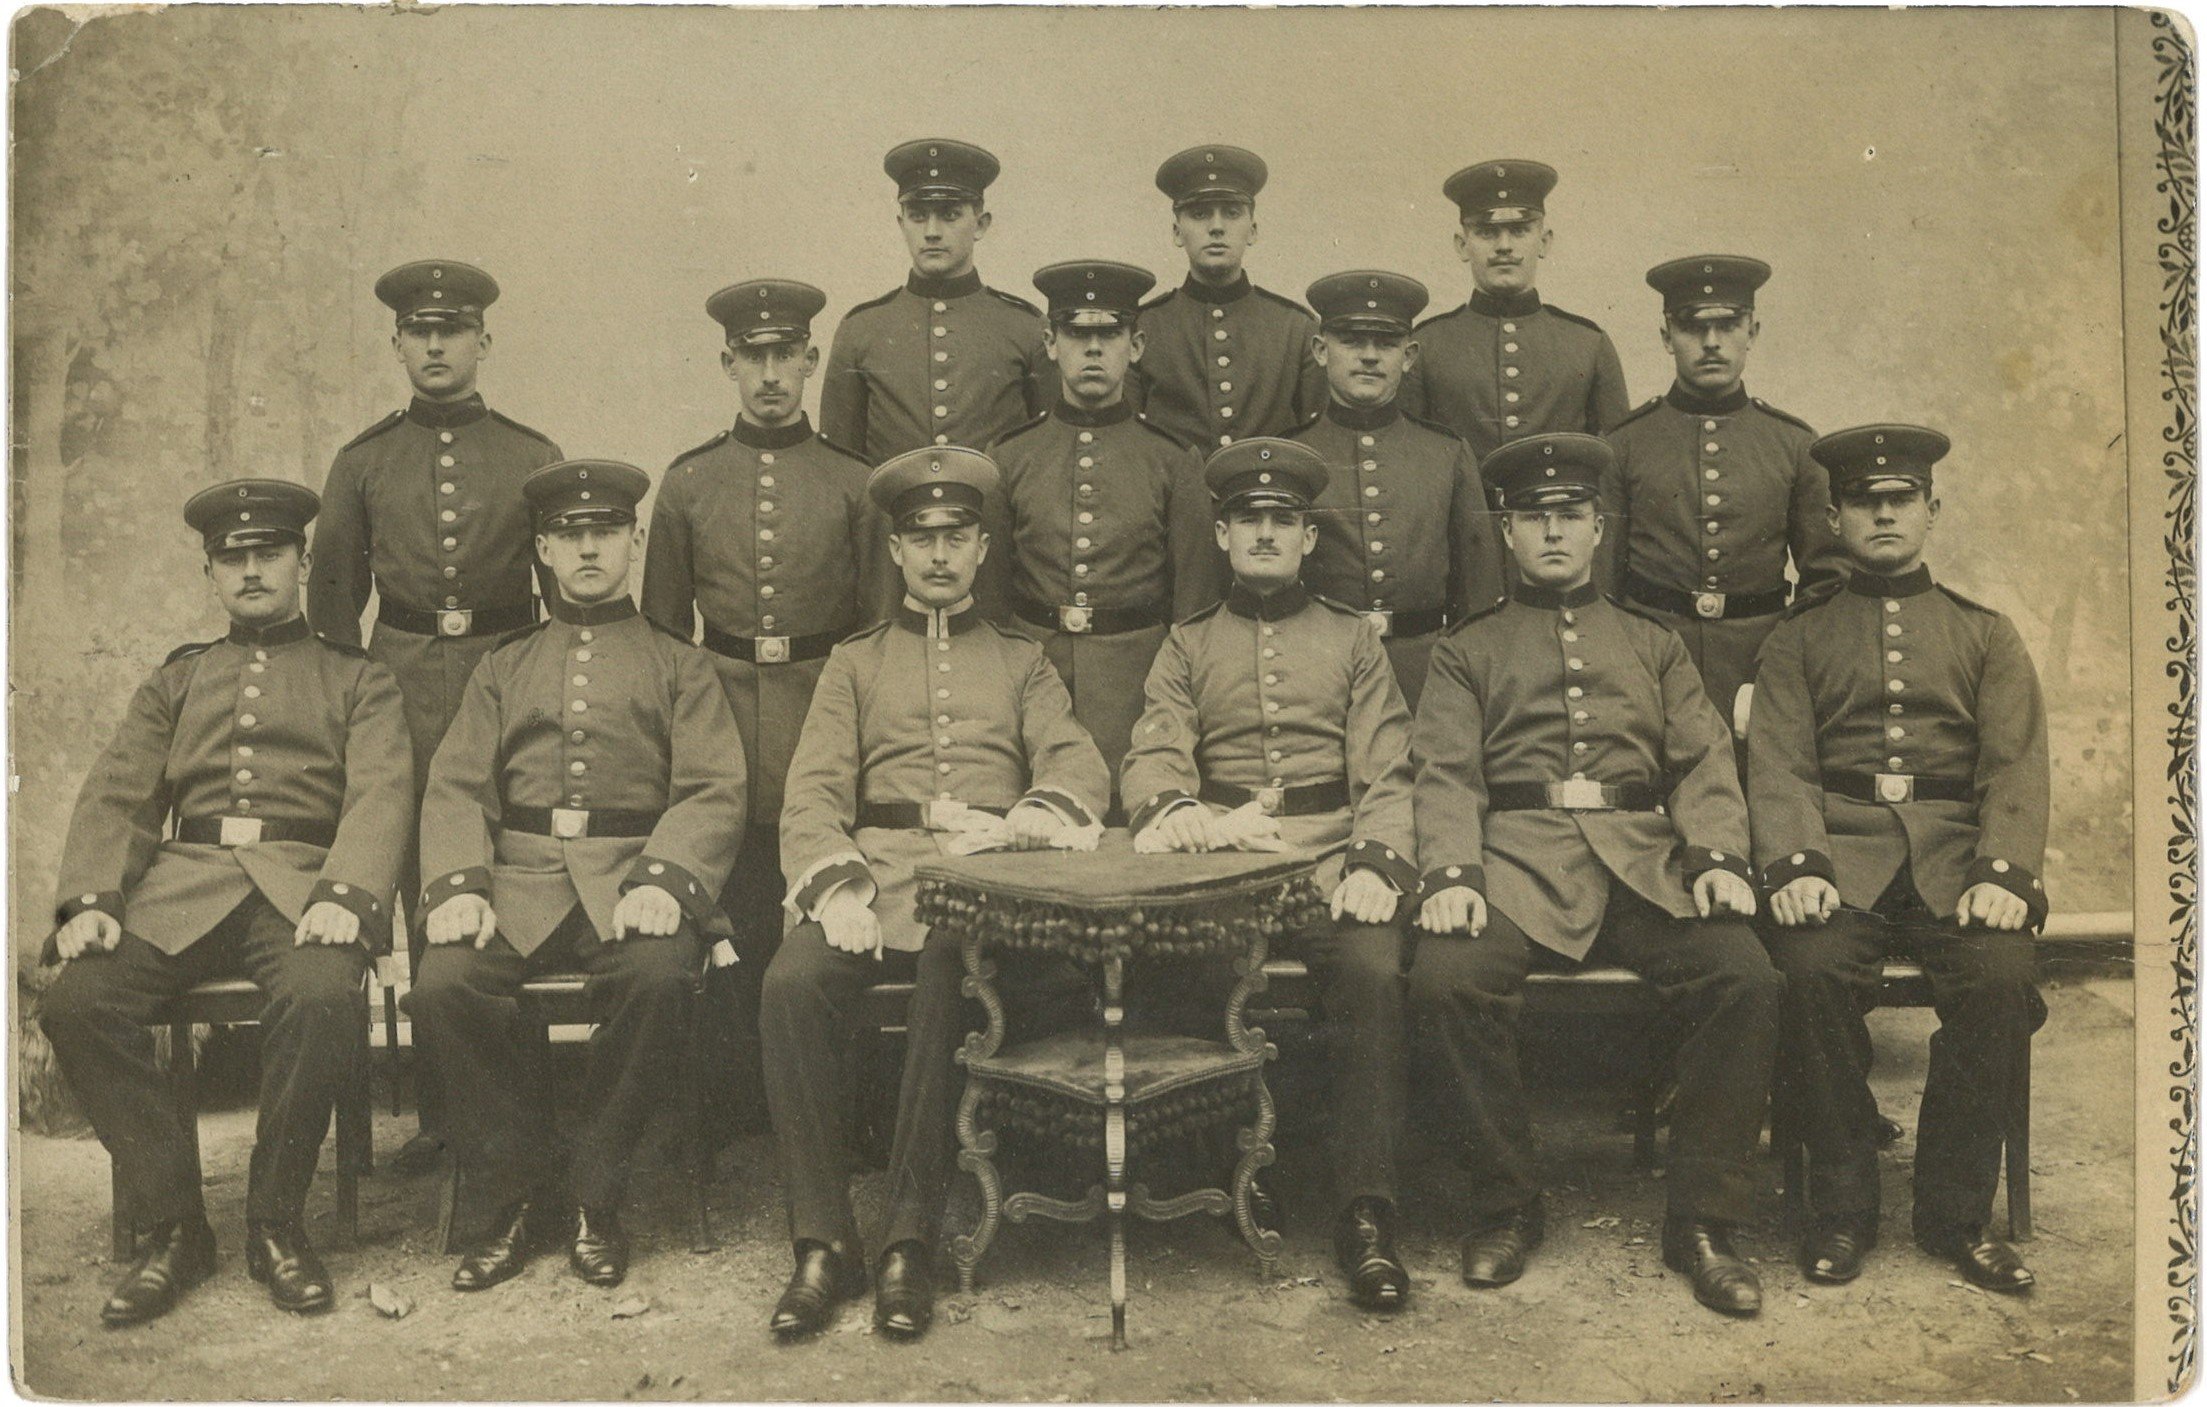 Magdeburg: Gruppenbild von Soldaten um 1911 (Landesgeschichtliche Vereinigung für die Mark Brandenburg e.V., Archiv CC BY)